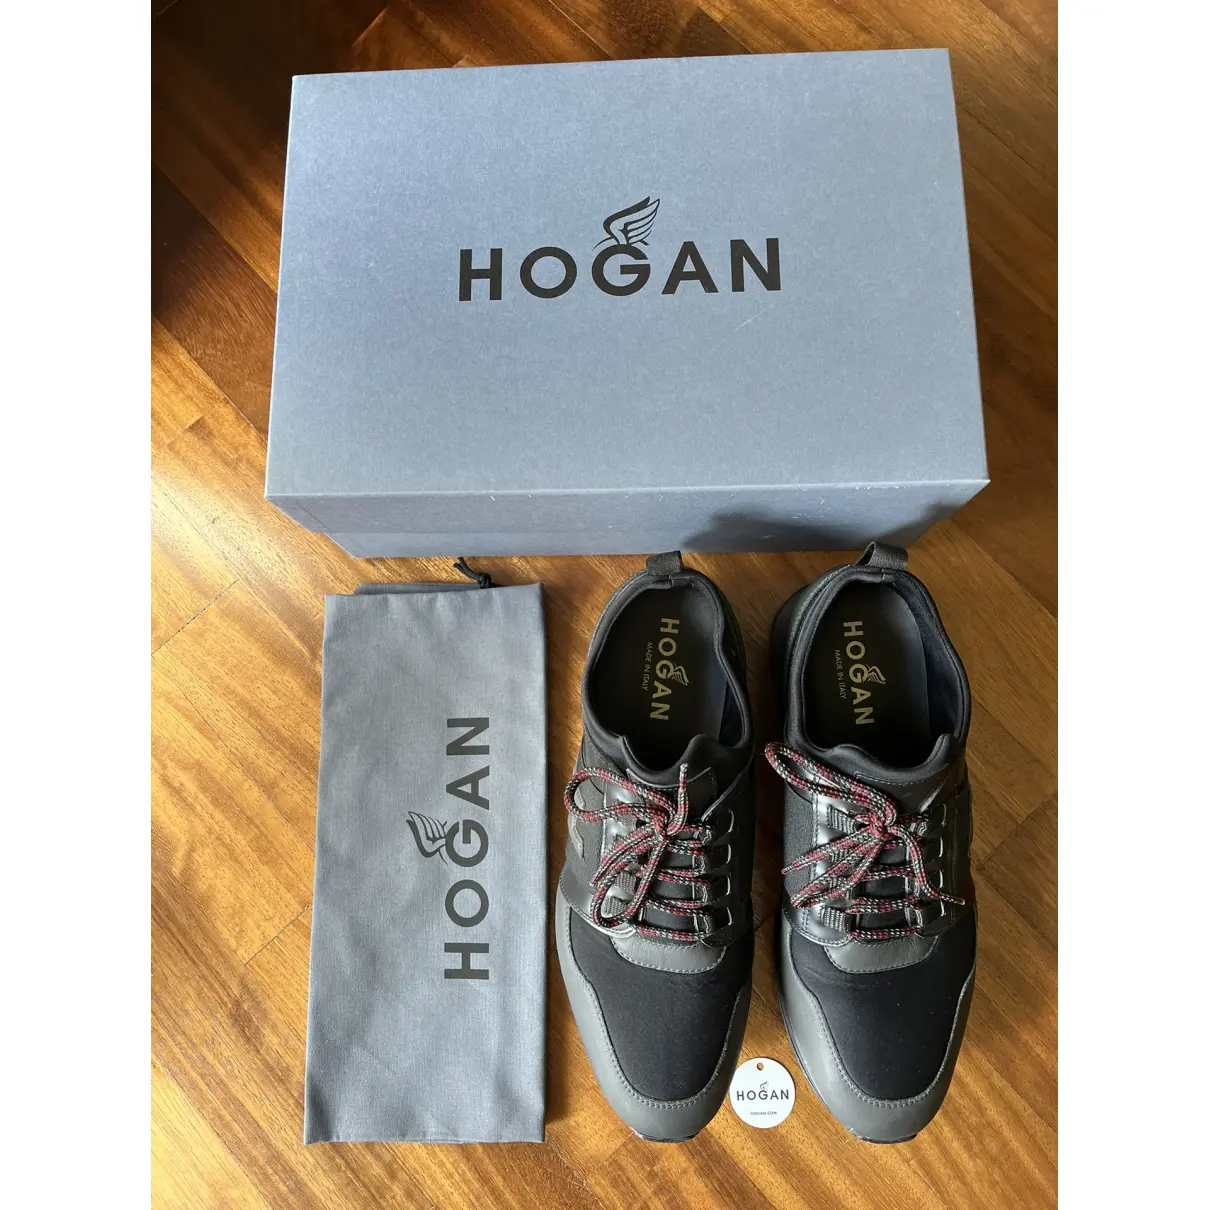 Buy Hogan Flats online